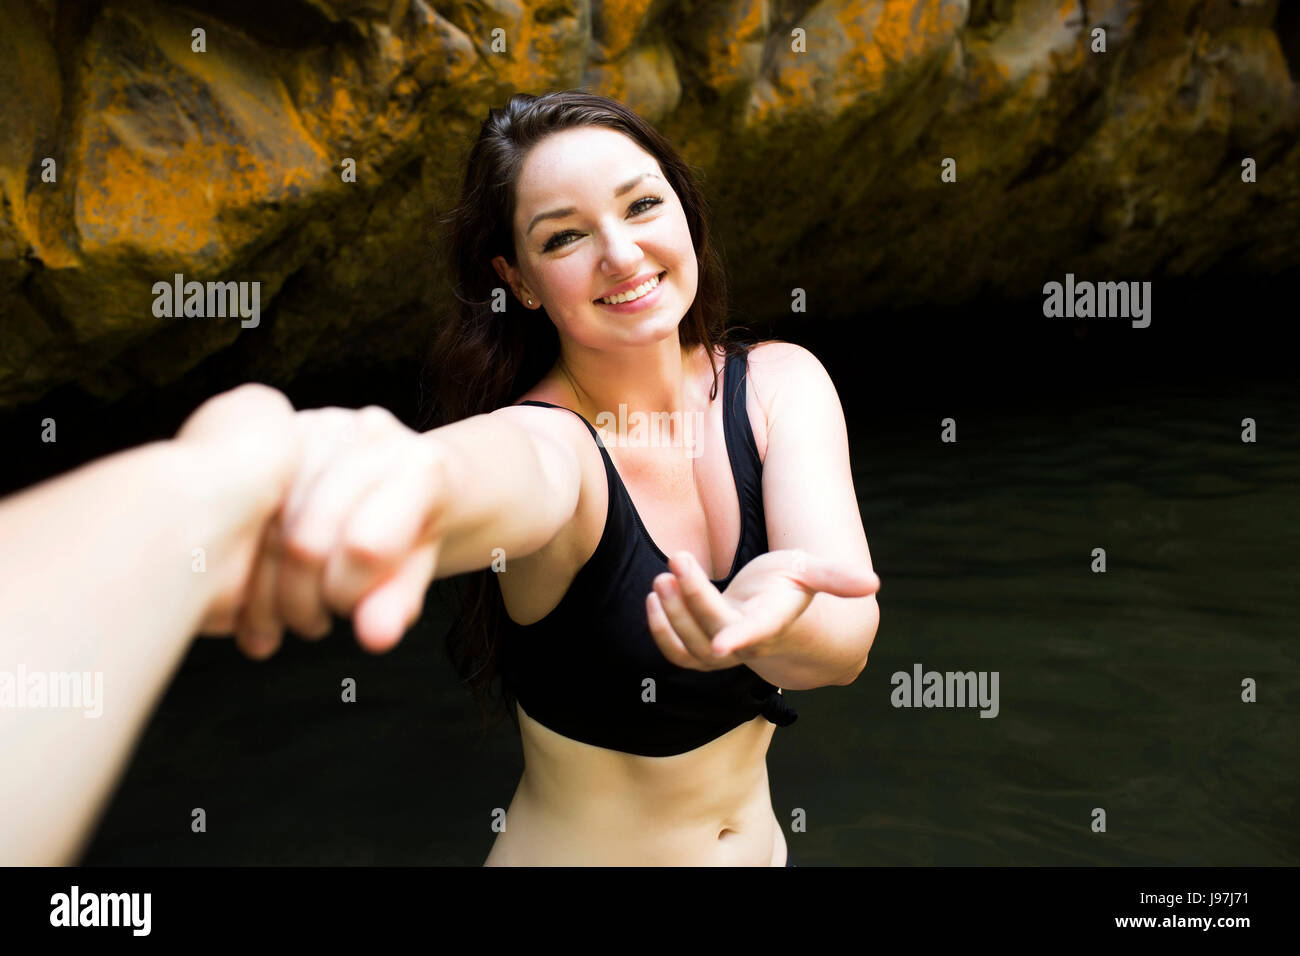 Frau von Wasser jemandes Hand haltend und Blick in die Kamera Stockfoto